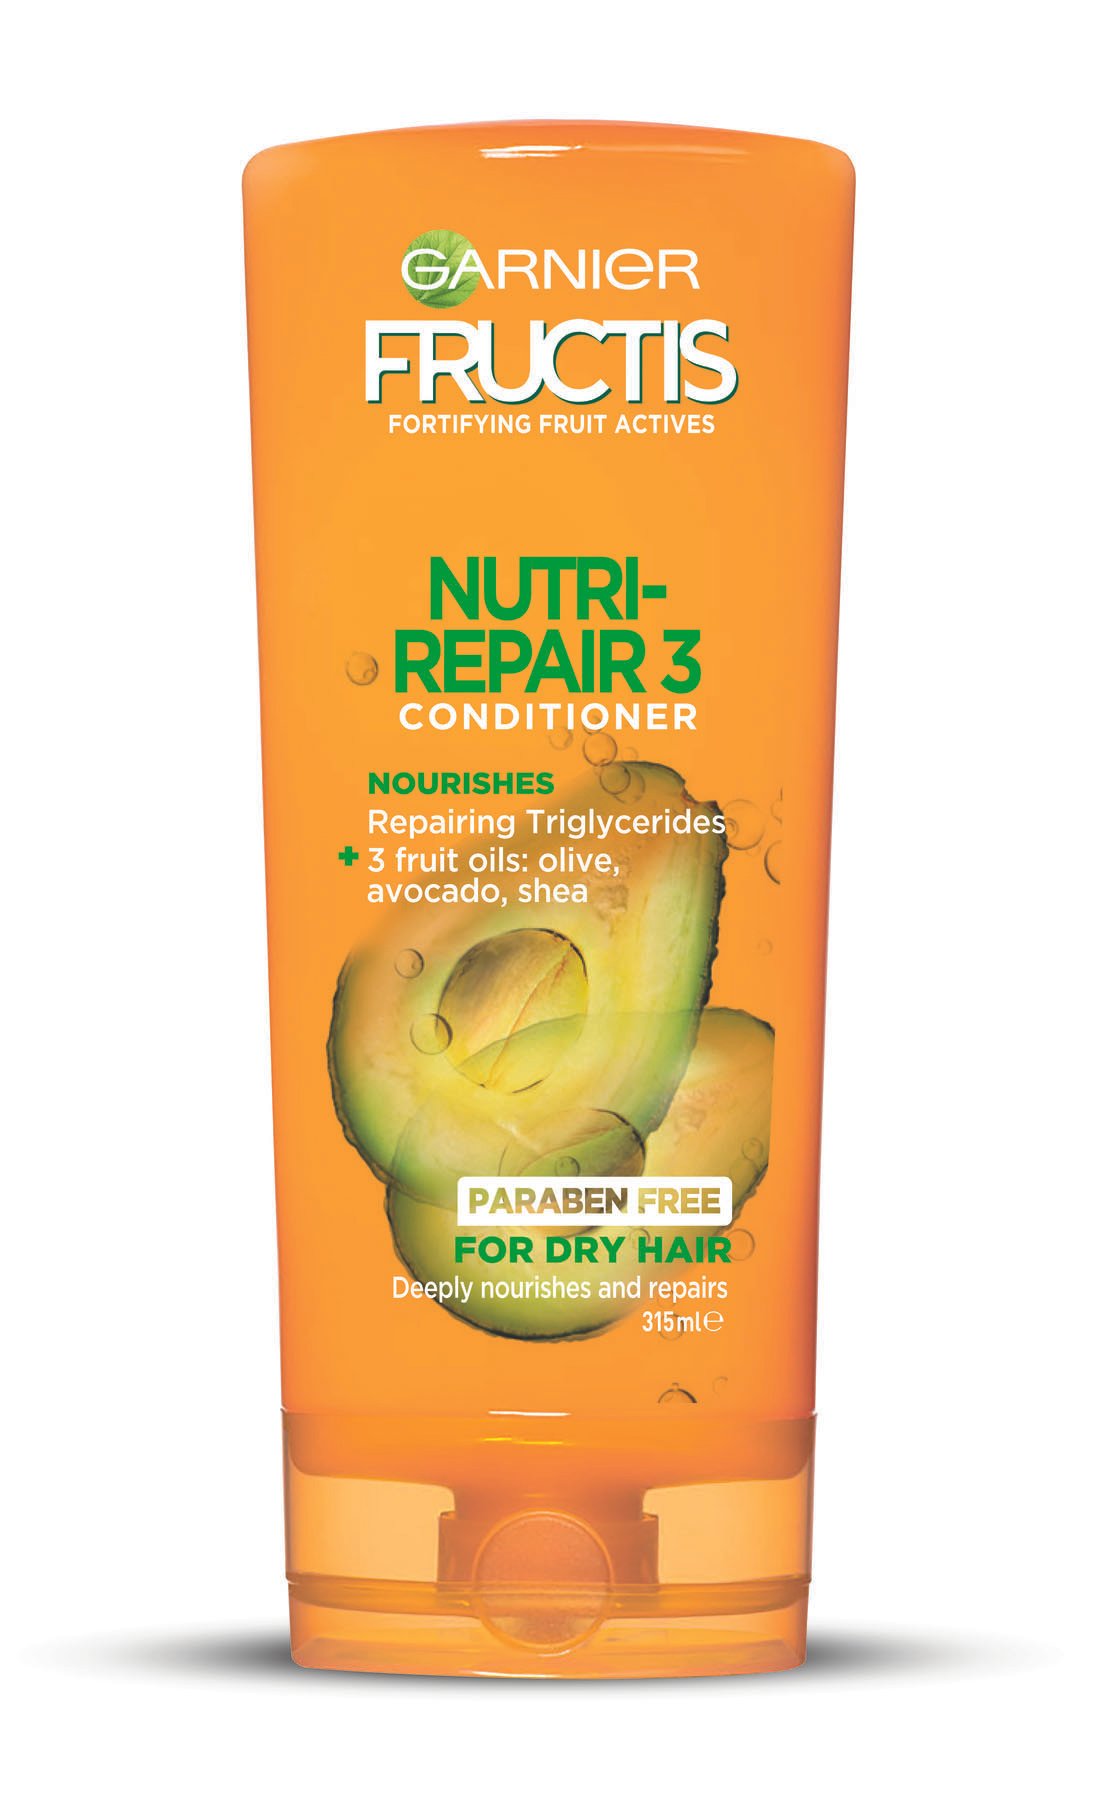 Fructis Nutri-Repair 3 Conditioner